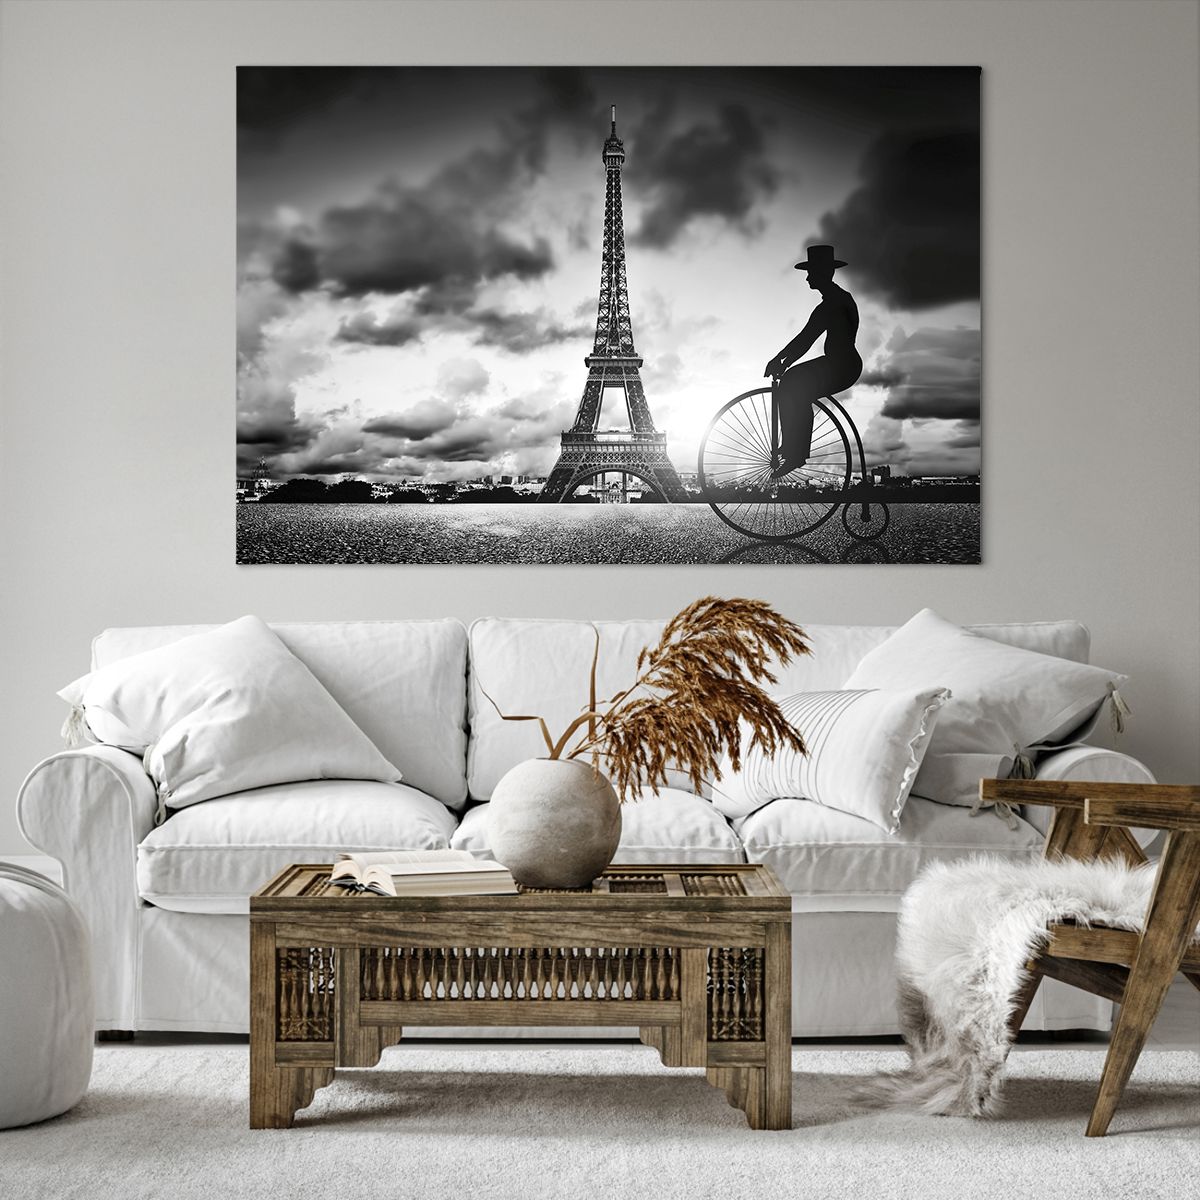 Obrazy na płótnie Paryż, Obrazy na płótnie Miasto, Obrazy na płótnie Vintage, Obrazy na płótnie Wieża Eiffla, Obrazy na płótnie Francja